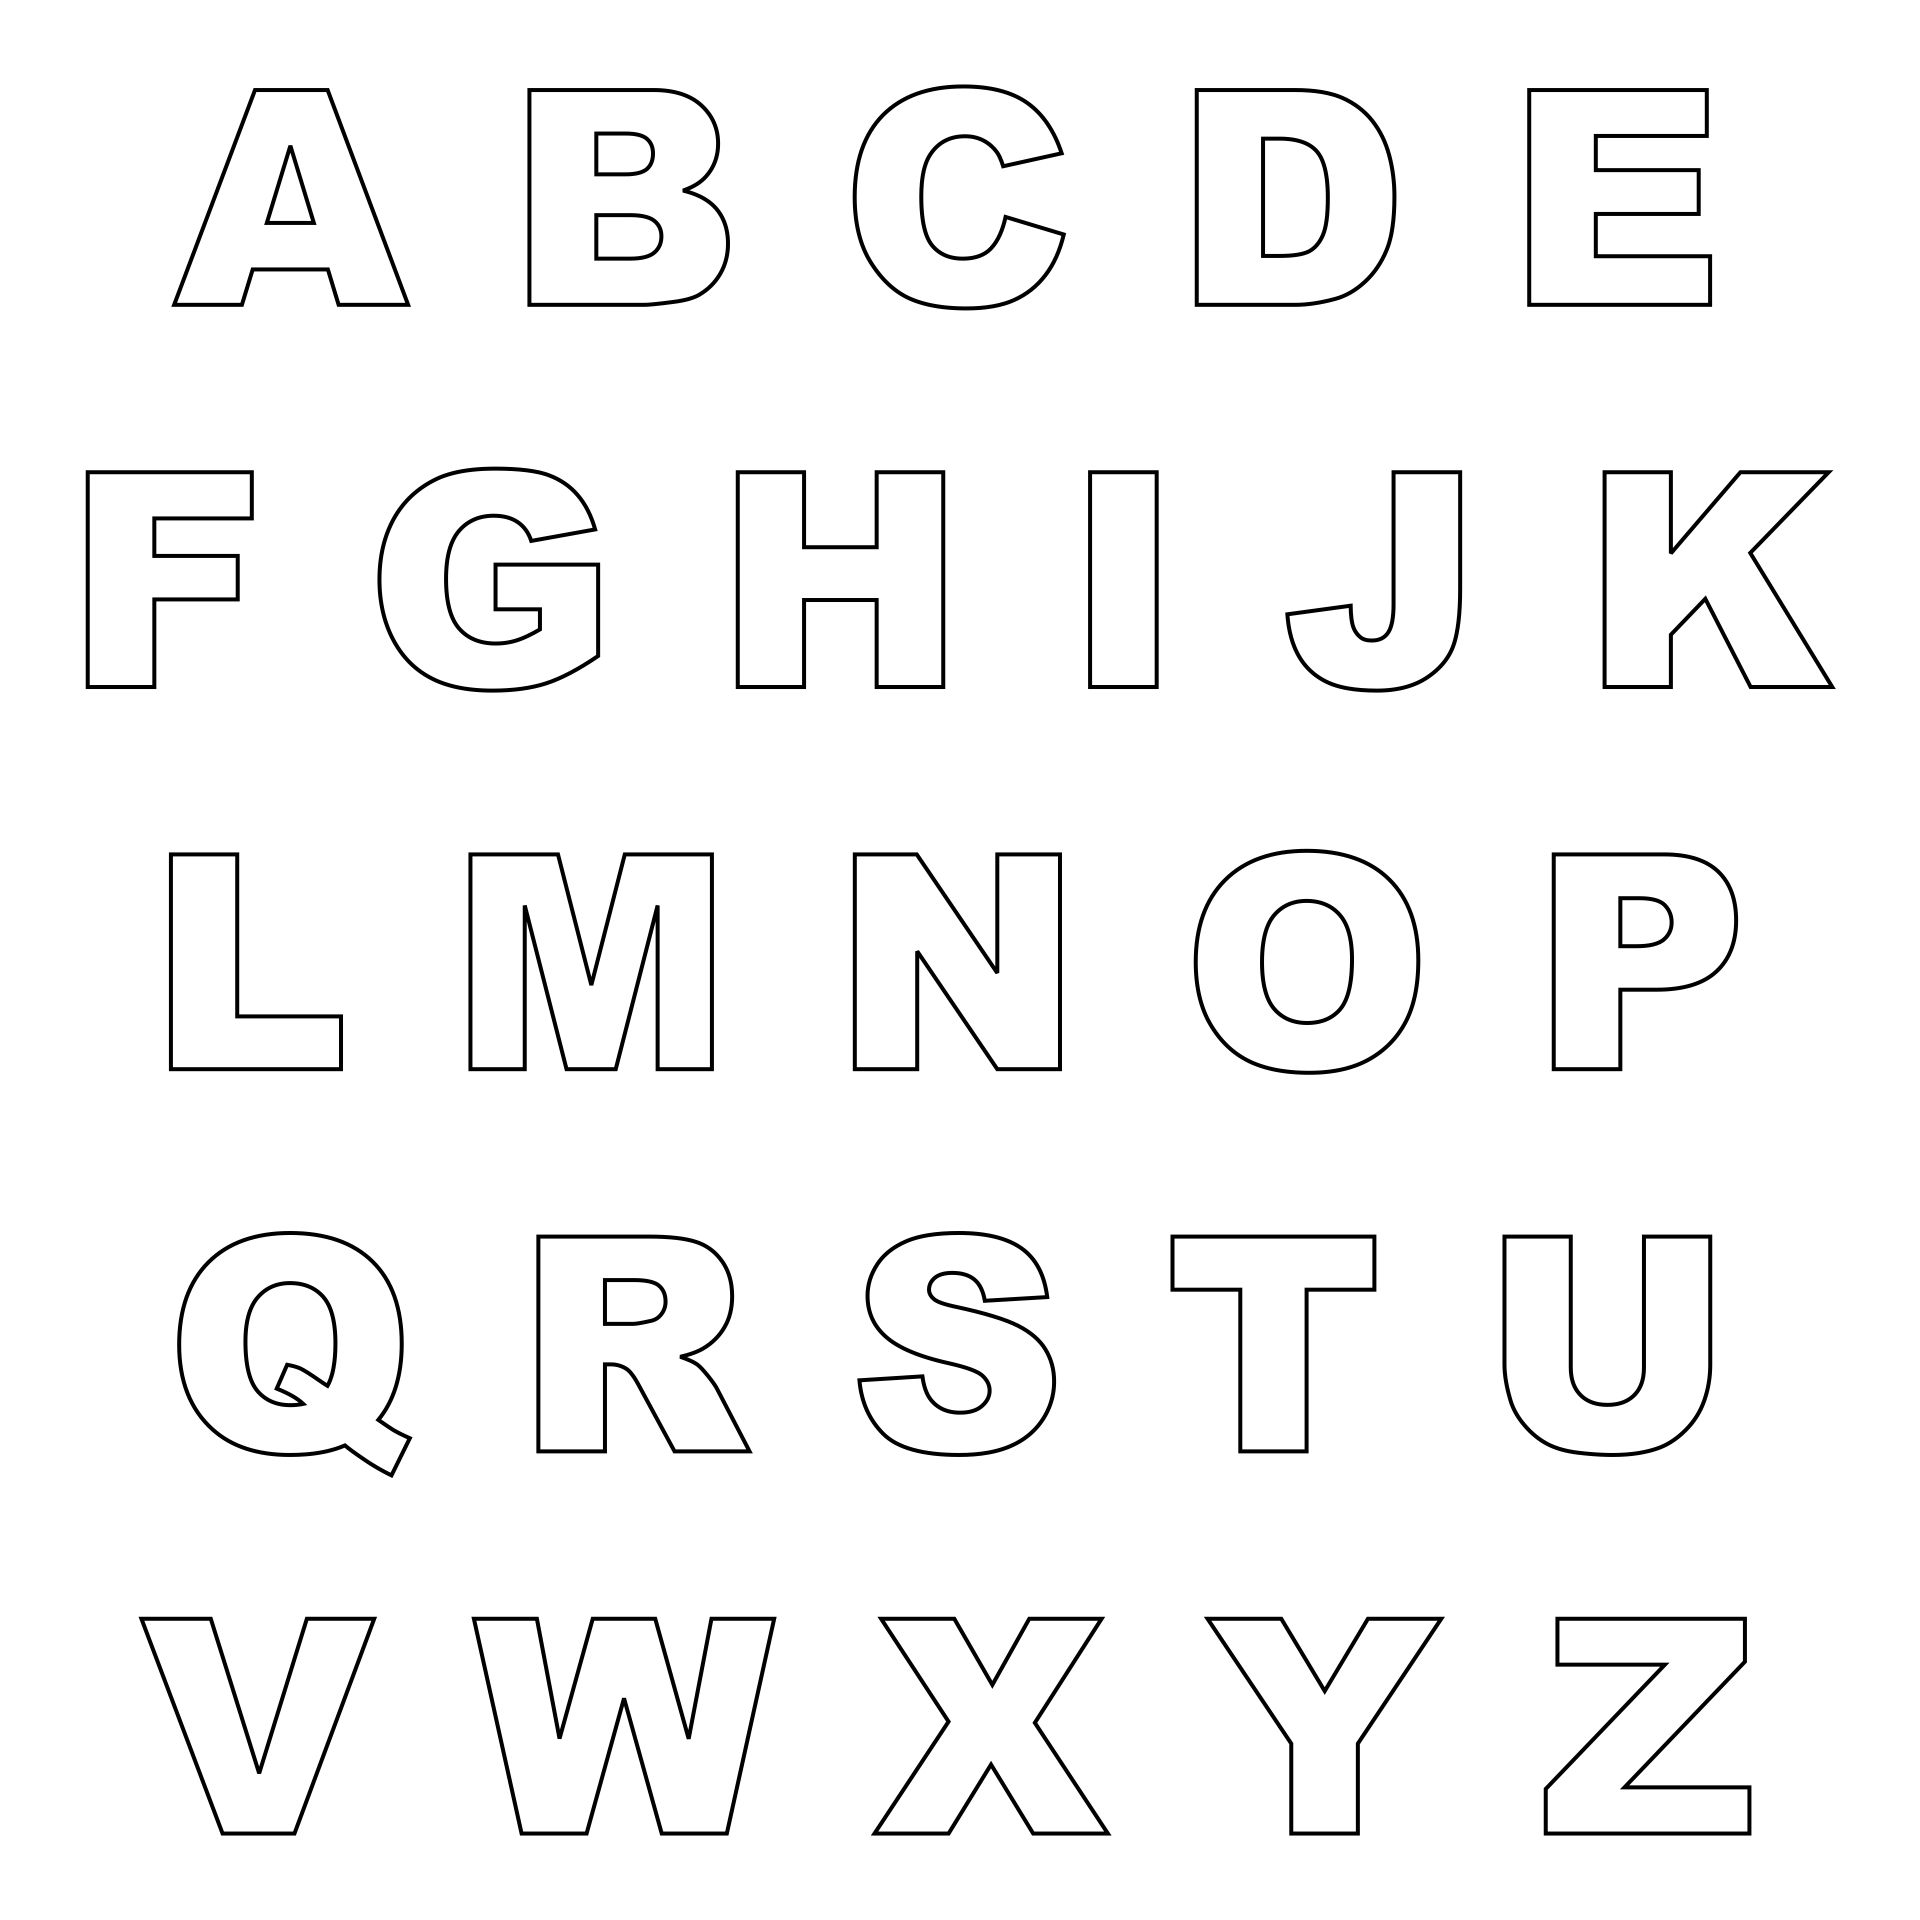 letter-cut-out-pdf-5-best-images-of-printable-bubble-letters-alphabet